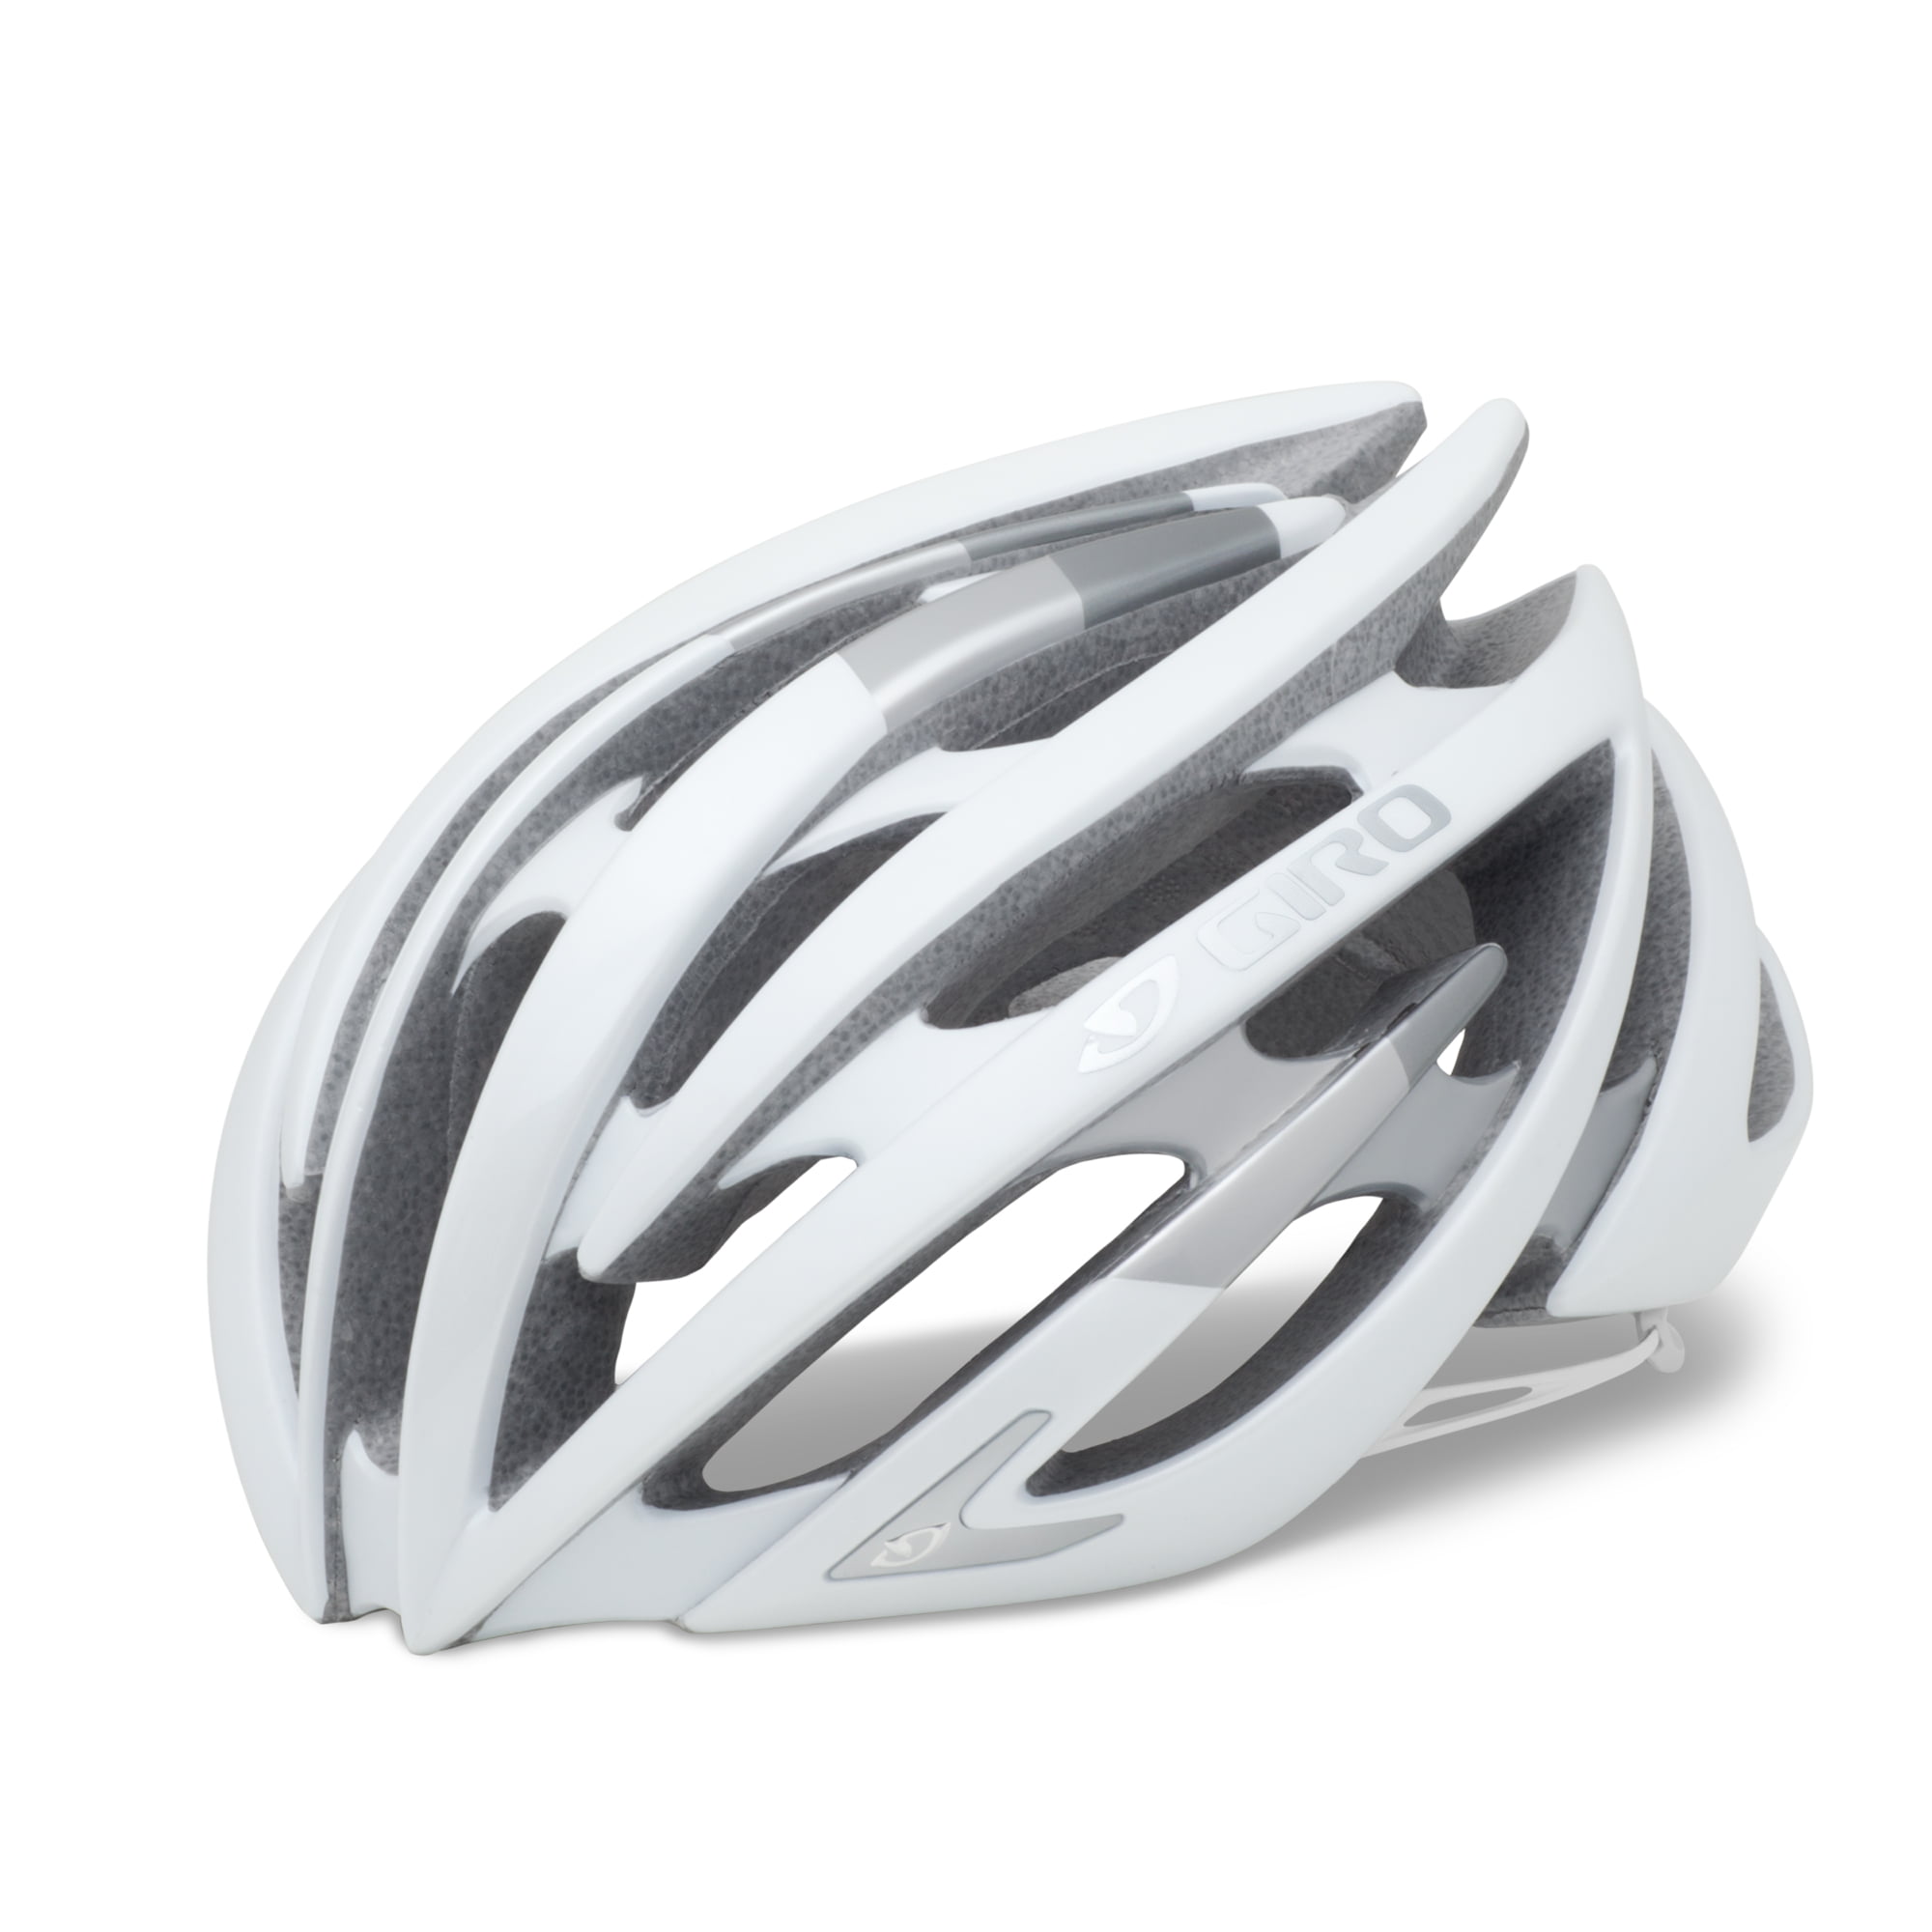 krassen veelbelovend specificeren Giro Aeon Helmet - Walmart.com